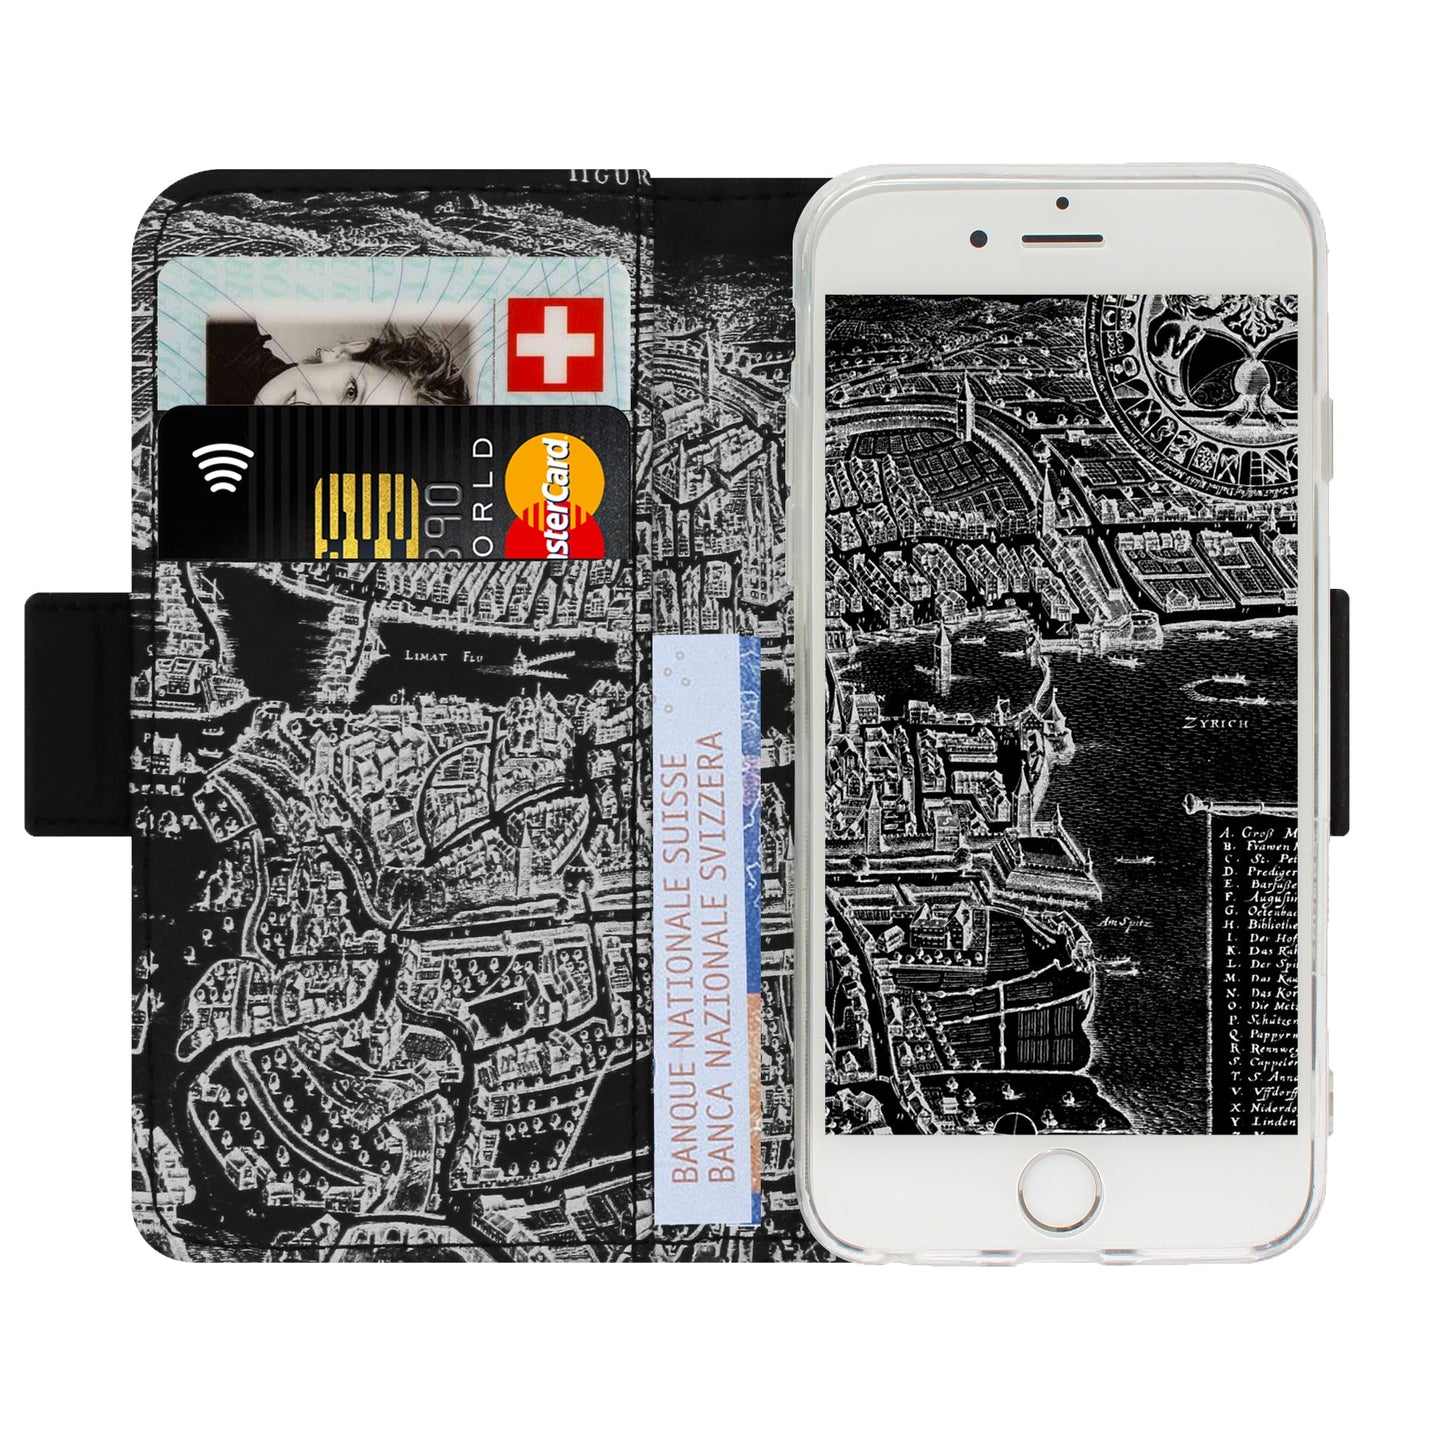 Zürich Merian Negativ Victor Case für iPhone 5/5S/SE 1